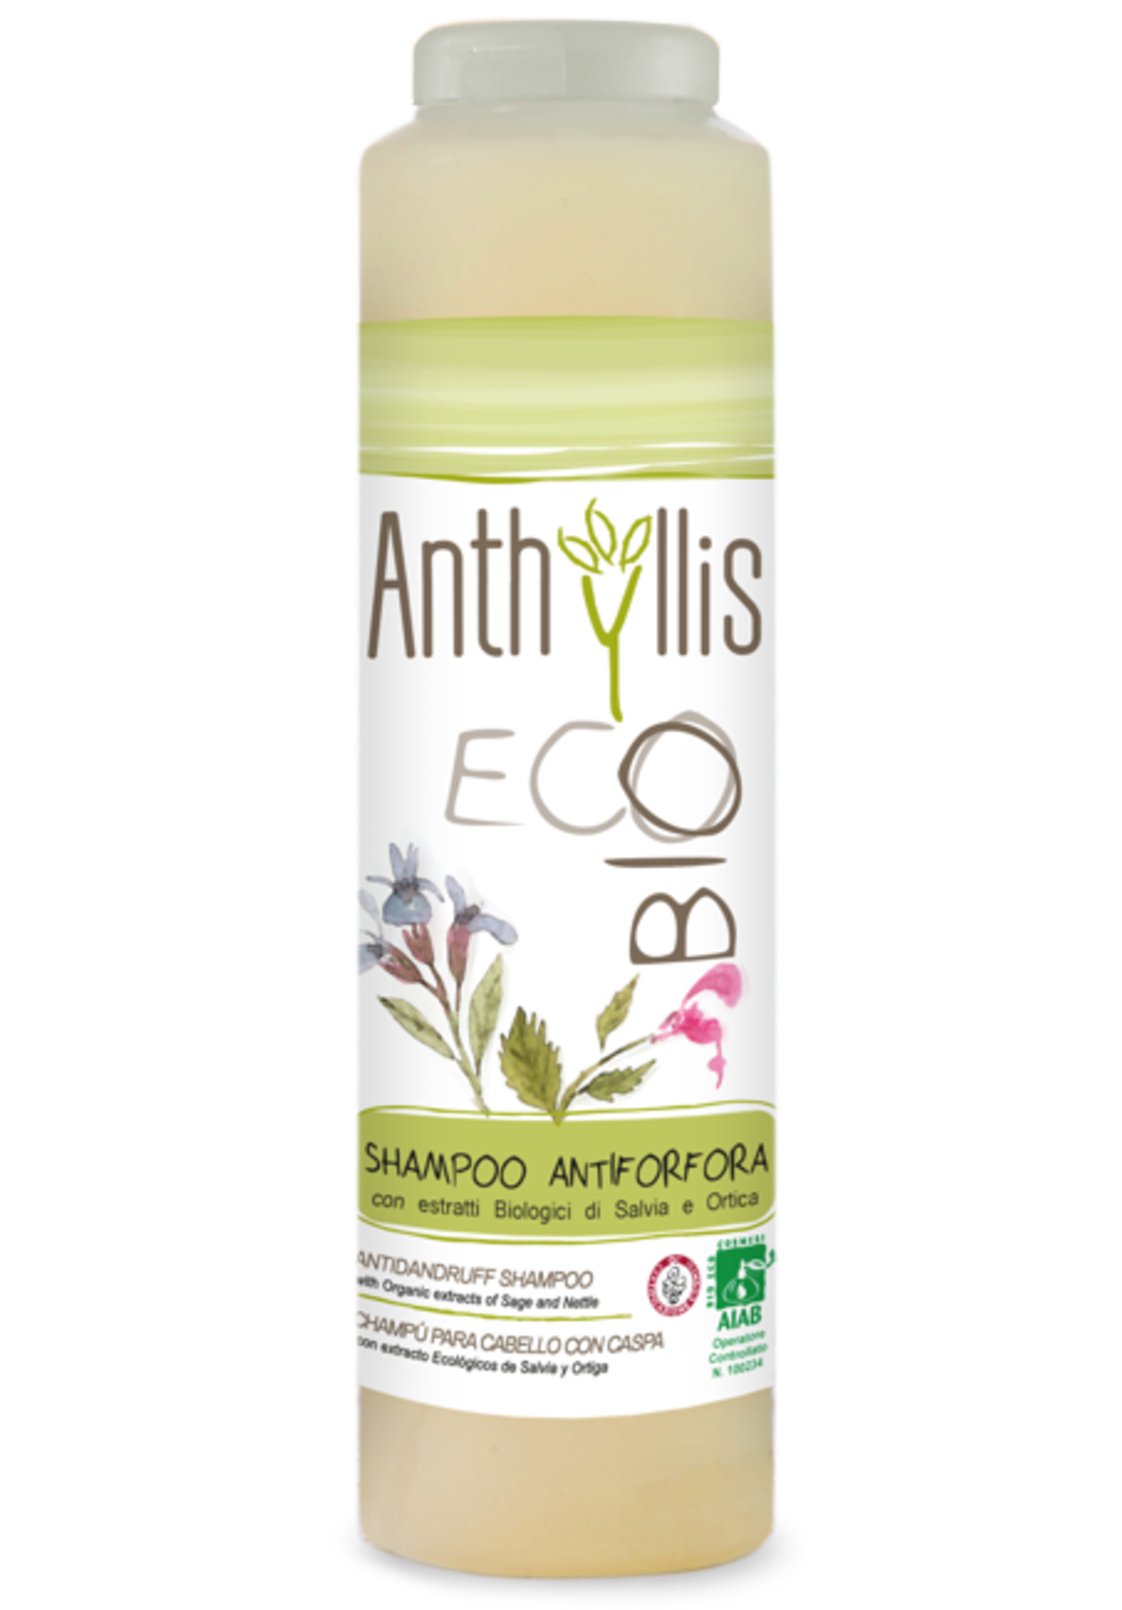 anthyllis szampon przeciwłupieżowy delikatn